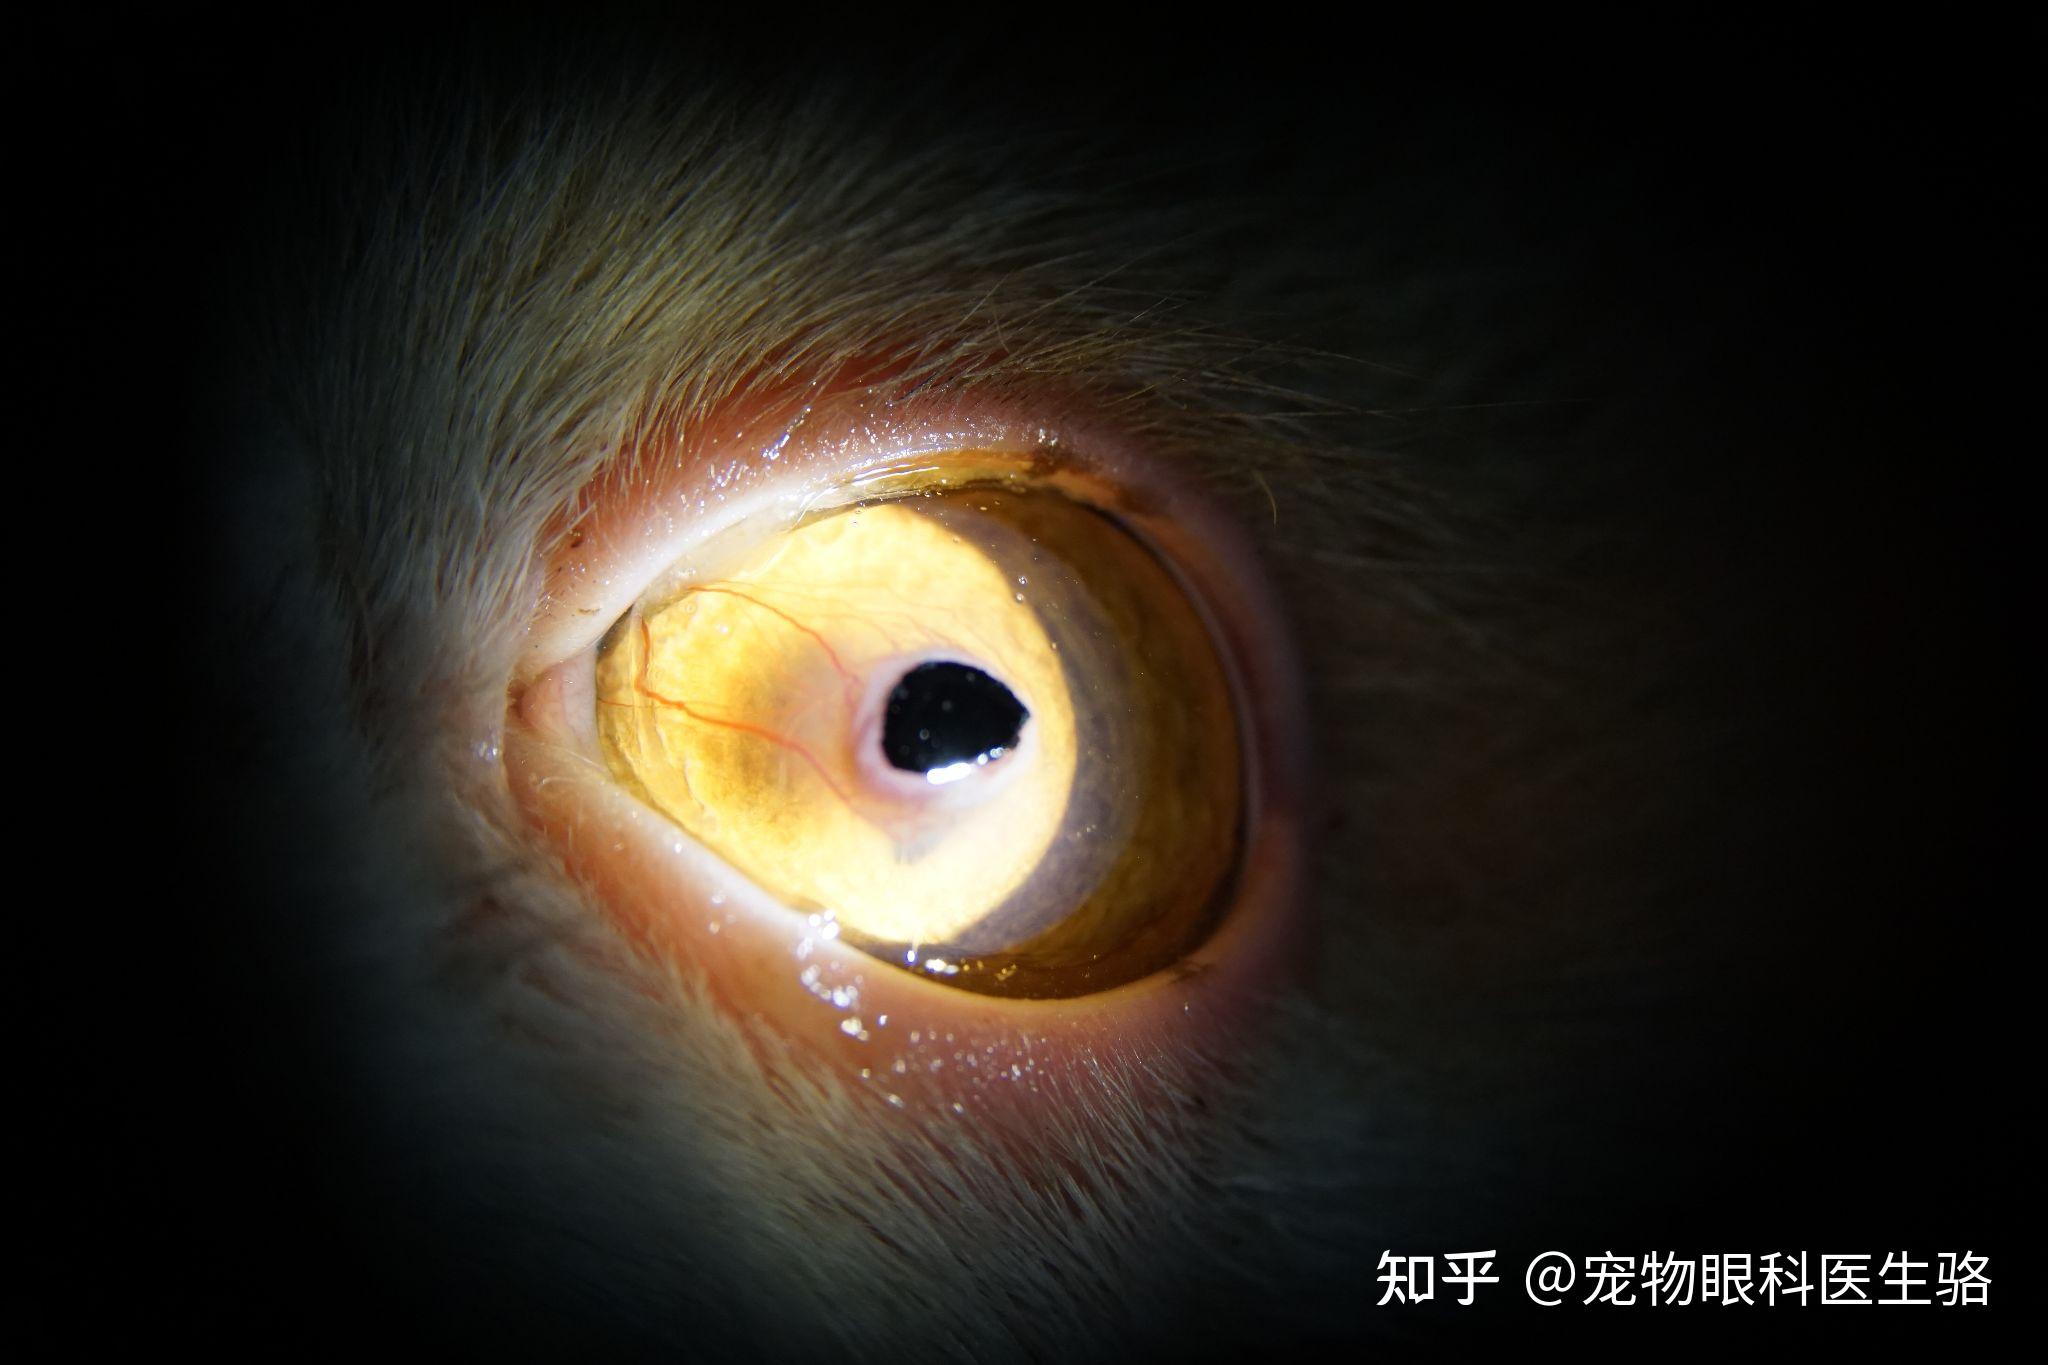 在患猫眼部疼痛,病变部分面积大的情况下,通常采取表板层角膜切除术